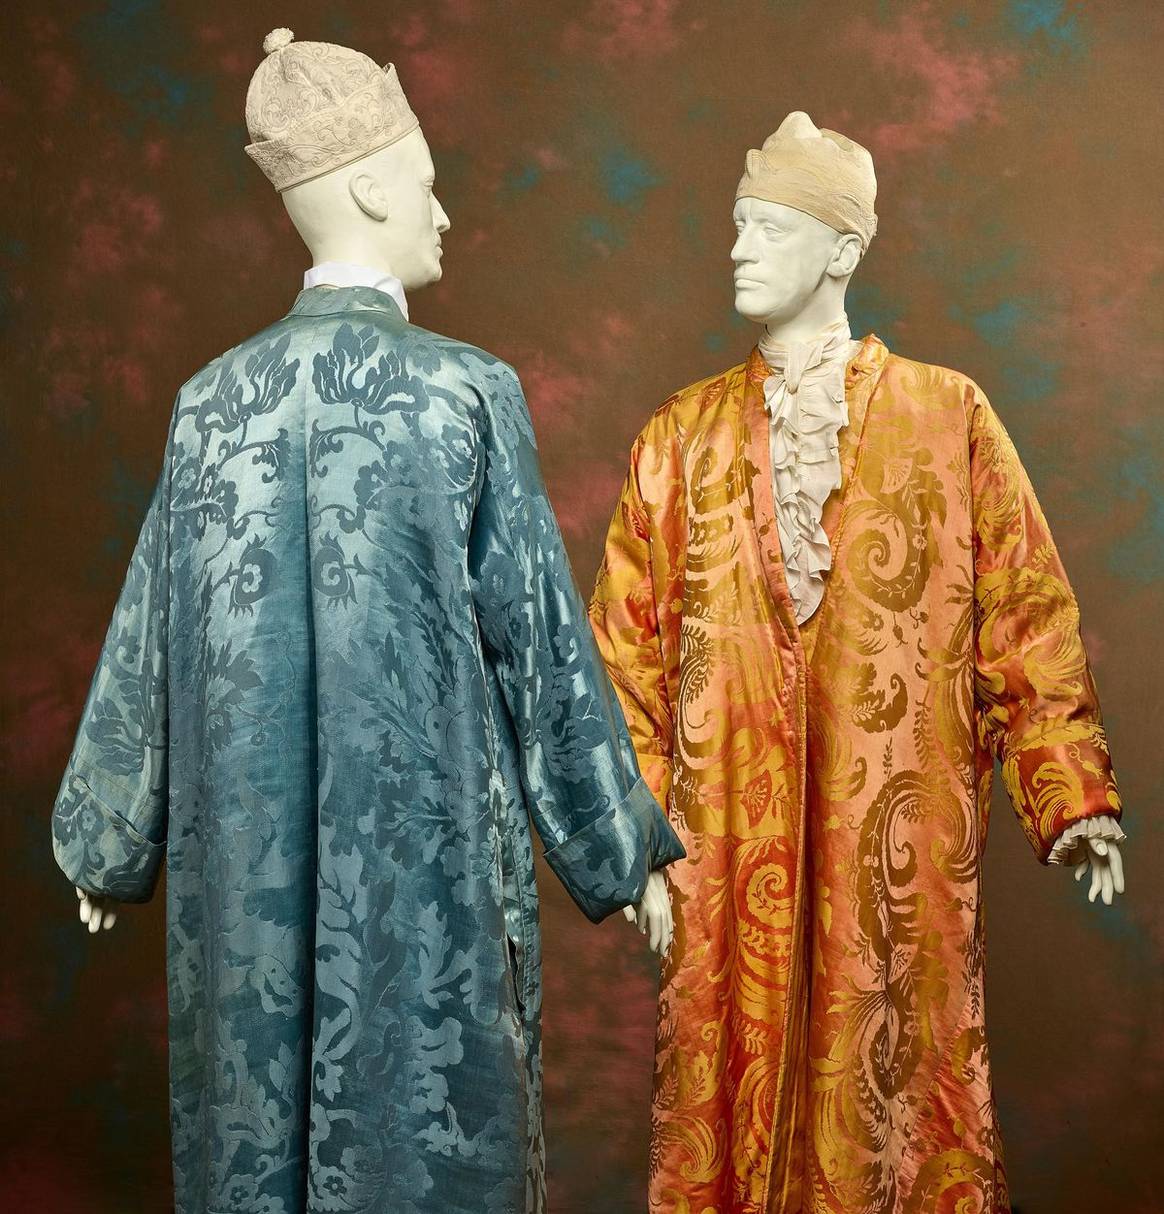 Imagen: Dos roqueros japoneses (: batas de hombre) en modelo de kimono de seda china y seda "bizarra", ca. 1750-1775, Museo de Arte de La Haya. Fotografía: Alice de Groot.